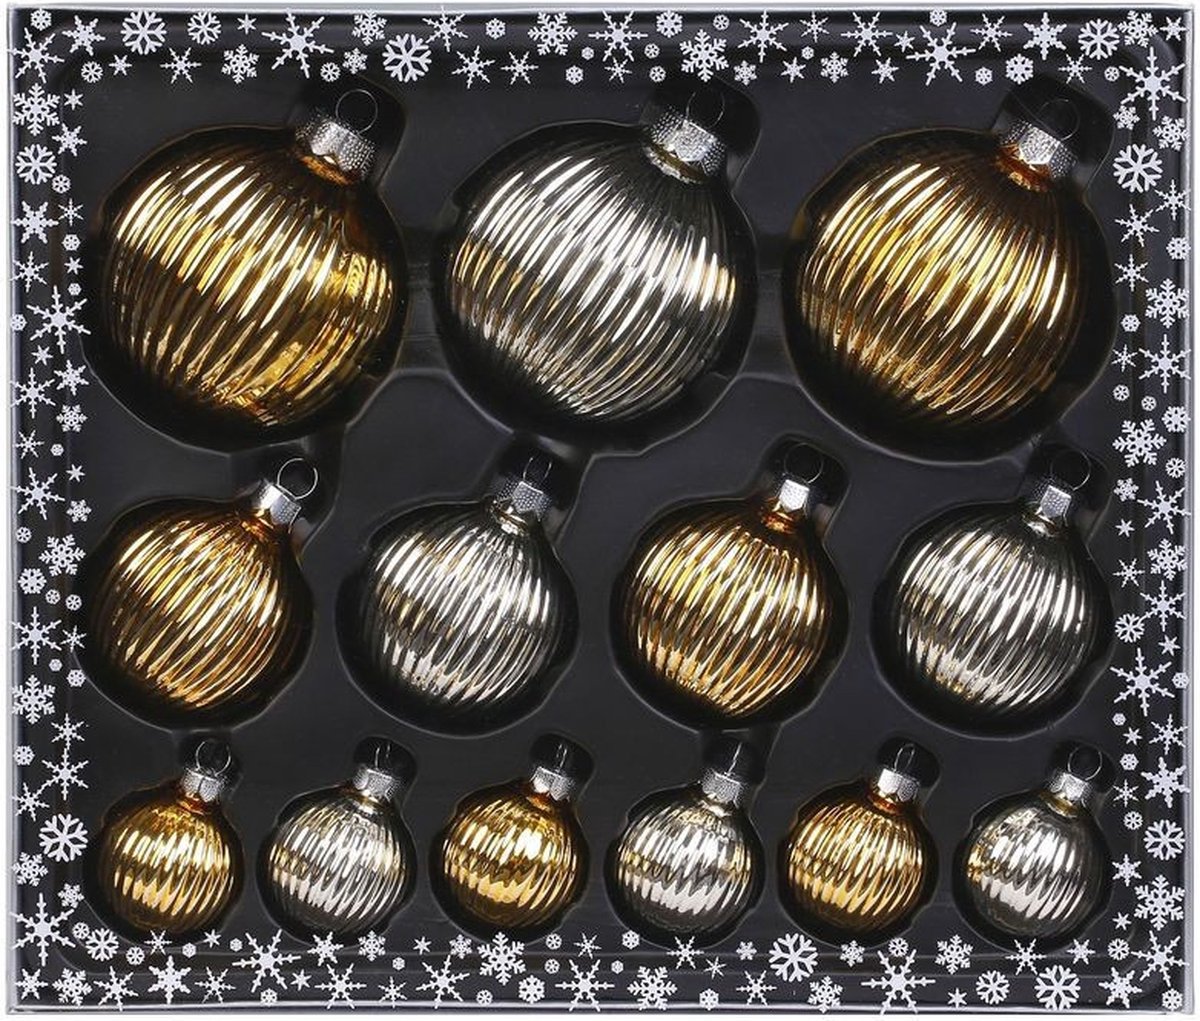 39x stuks luxe glazen kerstballen ribbel zilver/goud 4, 6, 8 cm - Kerstboomversiering/kerstversiering